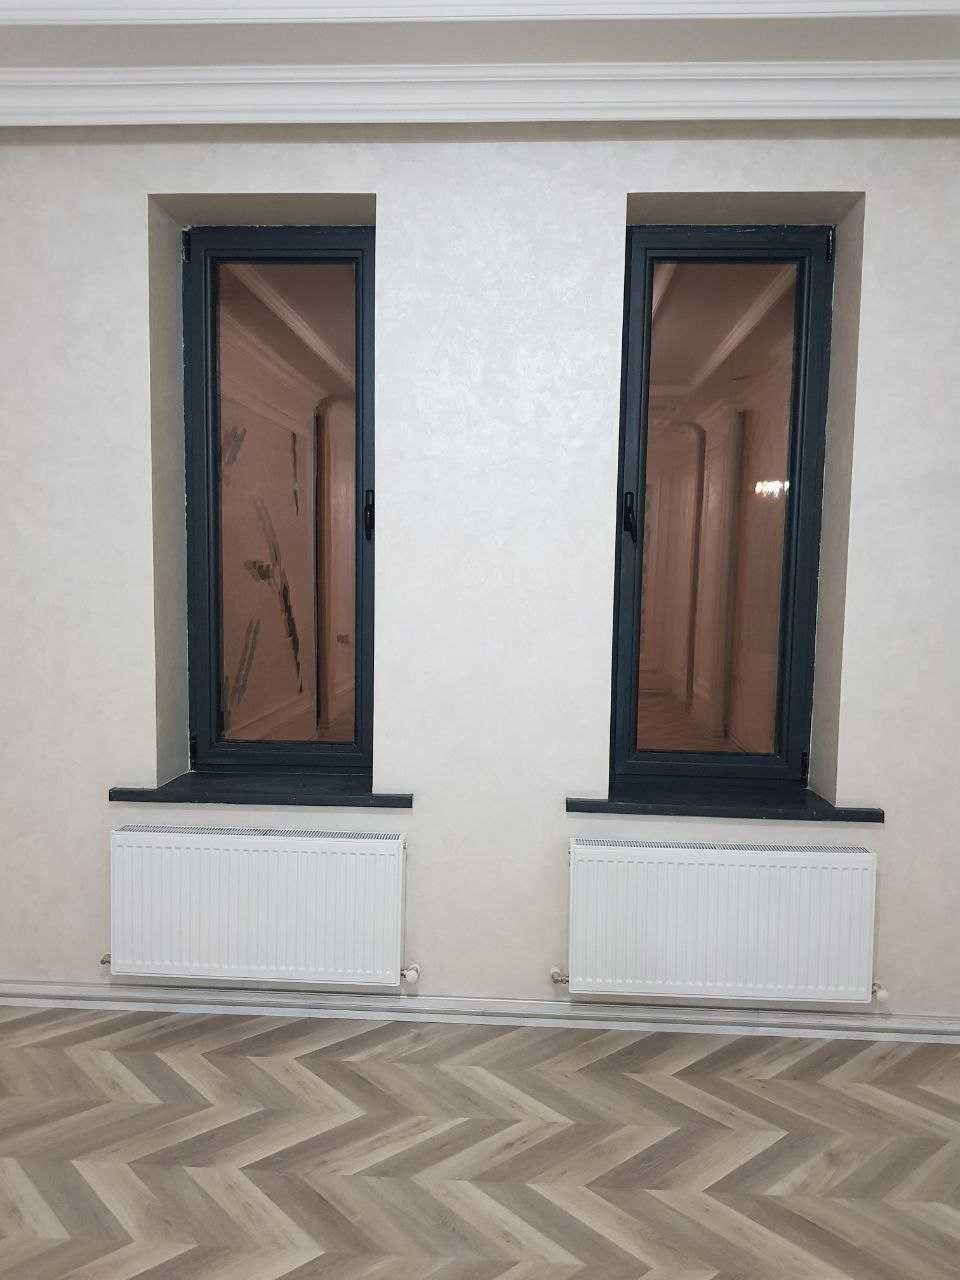 Качественные Акфа окна и двери из фабрики имзо | Термо двери